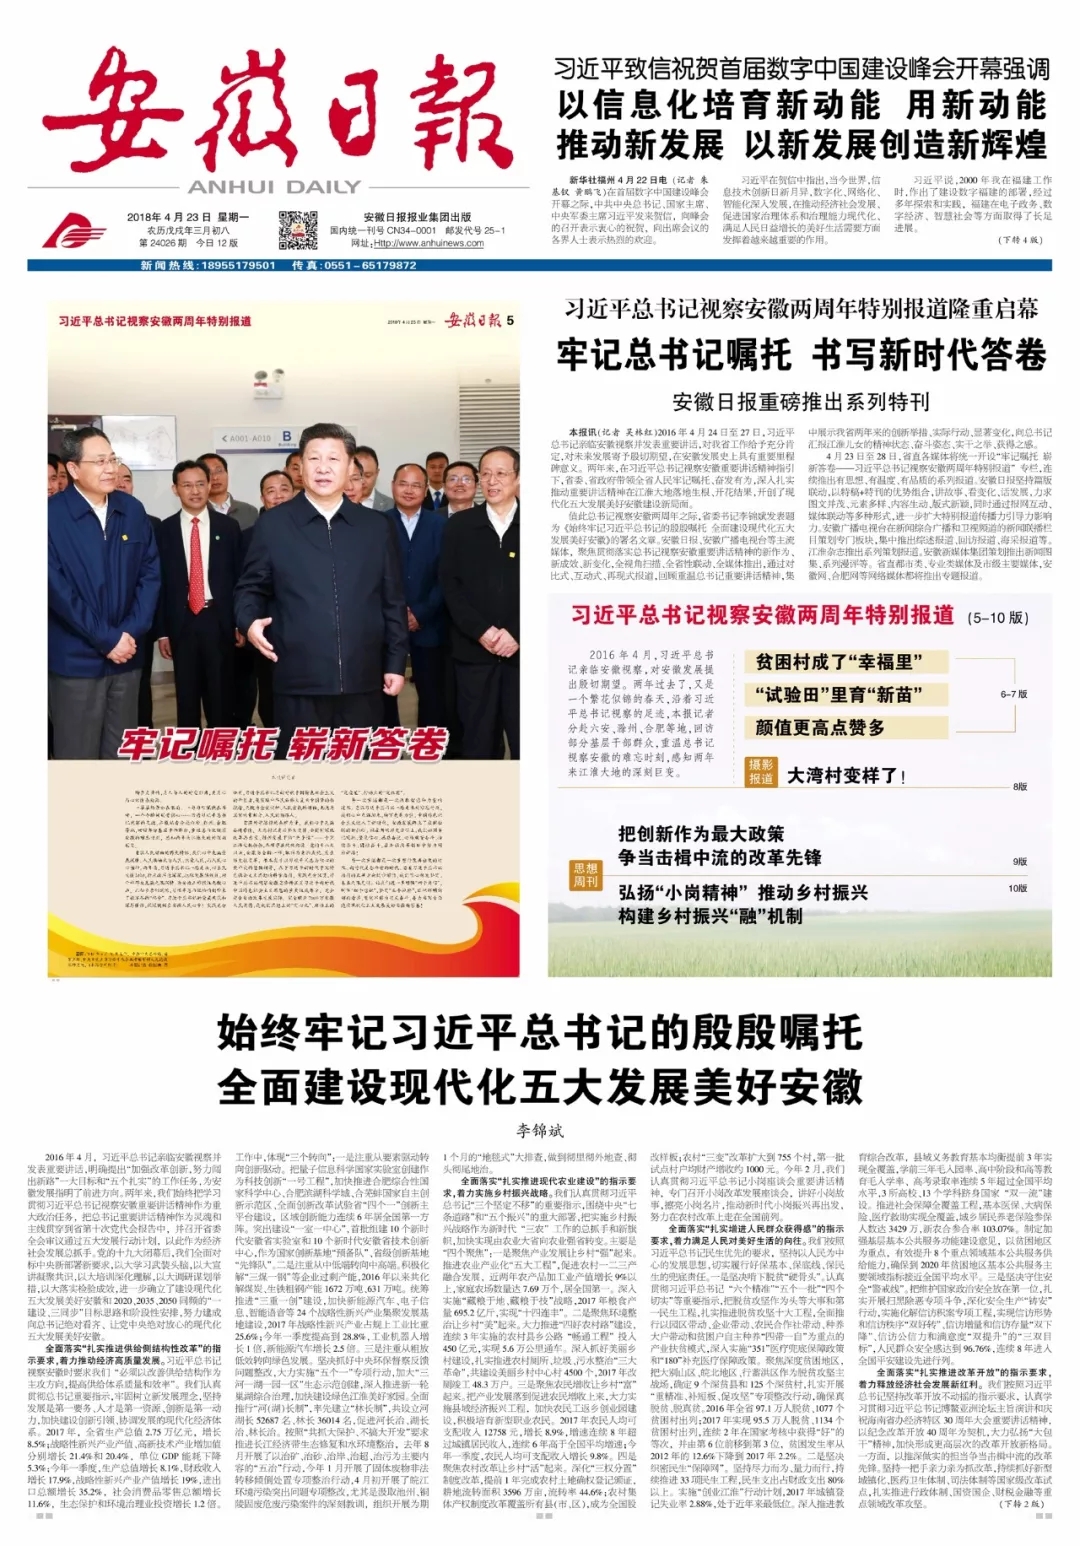 安徽日报推出"总书记视察安徽两周年特别报道"